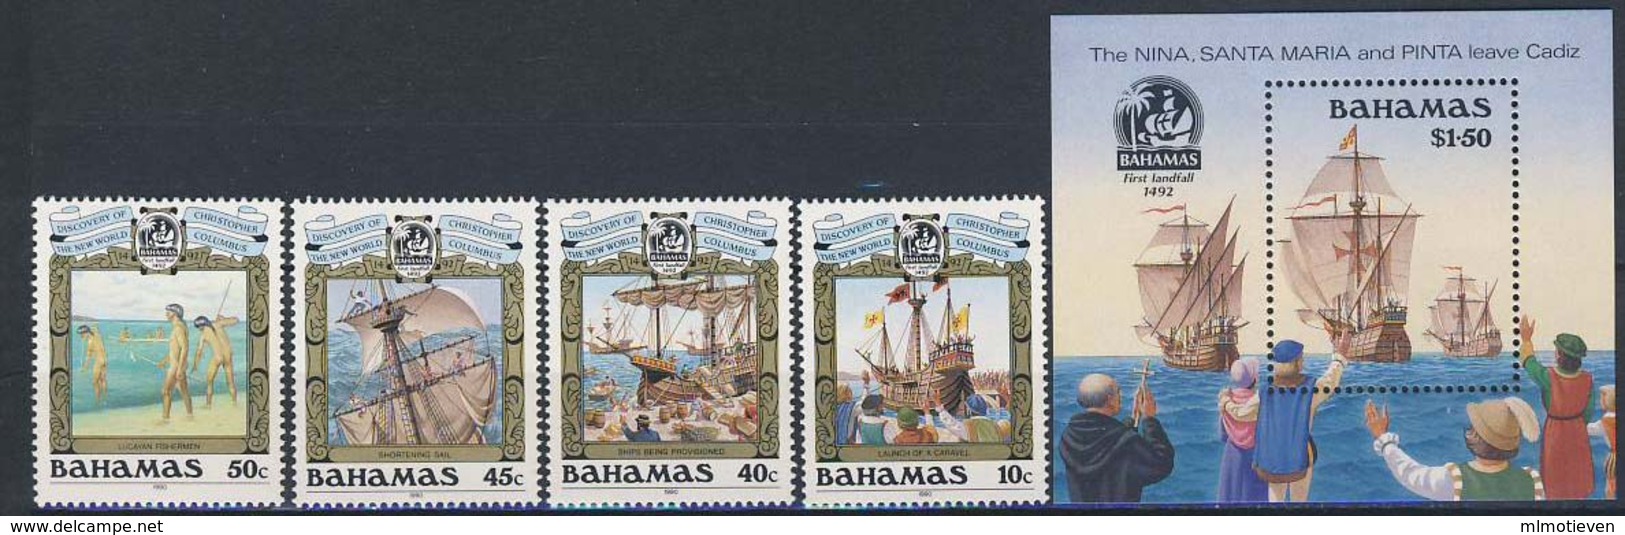 MVS-BK1-164 MINT ¤ BAHAMAS 1990 KOMPL. SET ¤ VOILIERS - ZEILSCHEPEN - SAILING SHIPS OVER THE WORLD - Maritiem